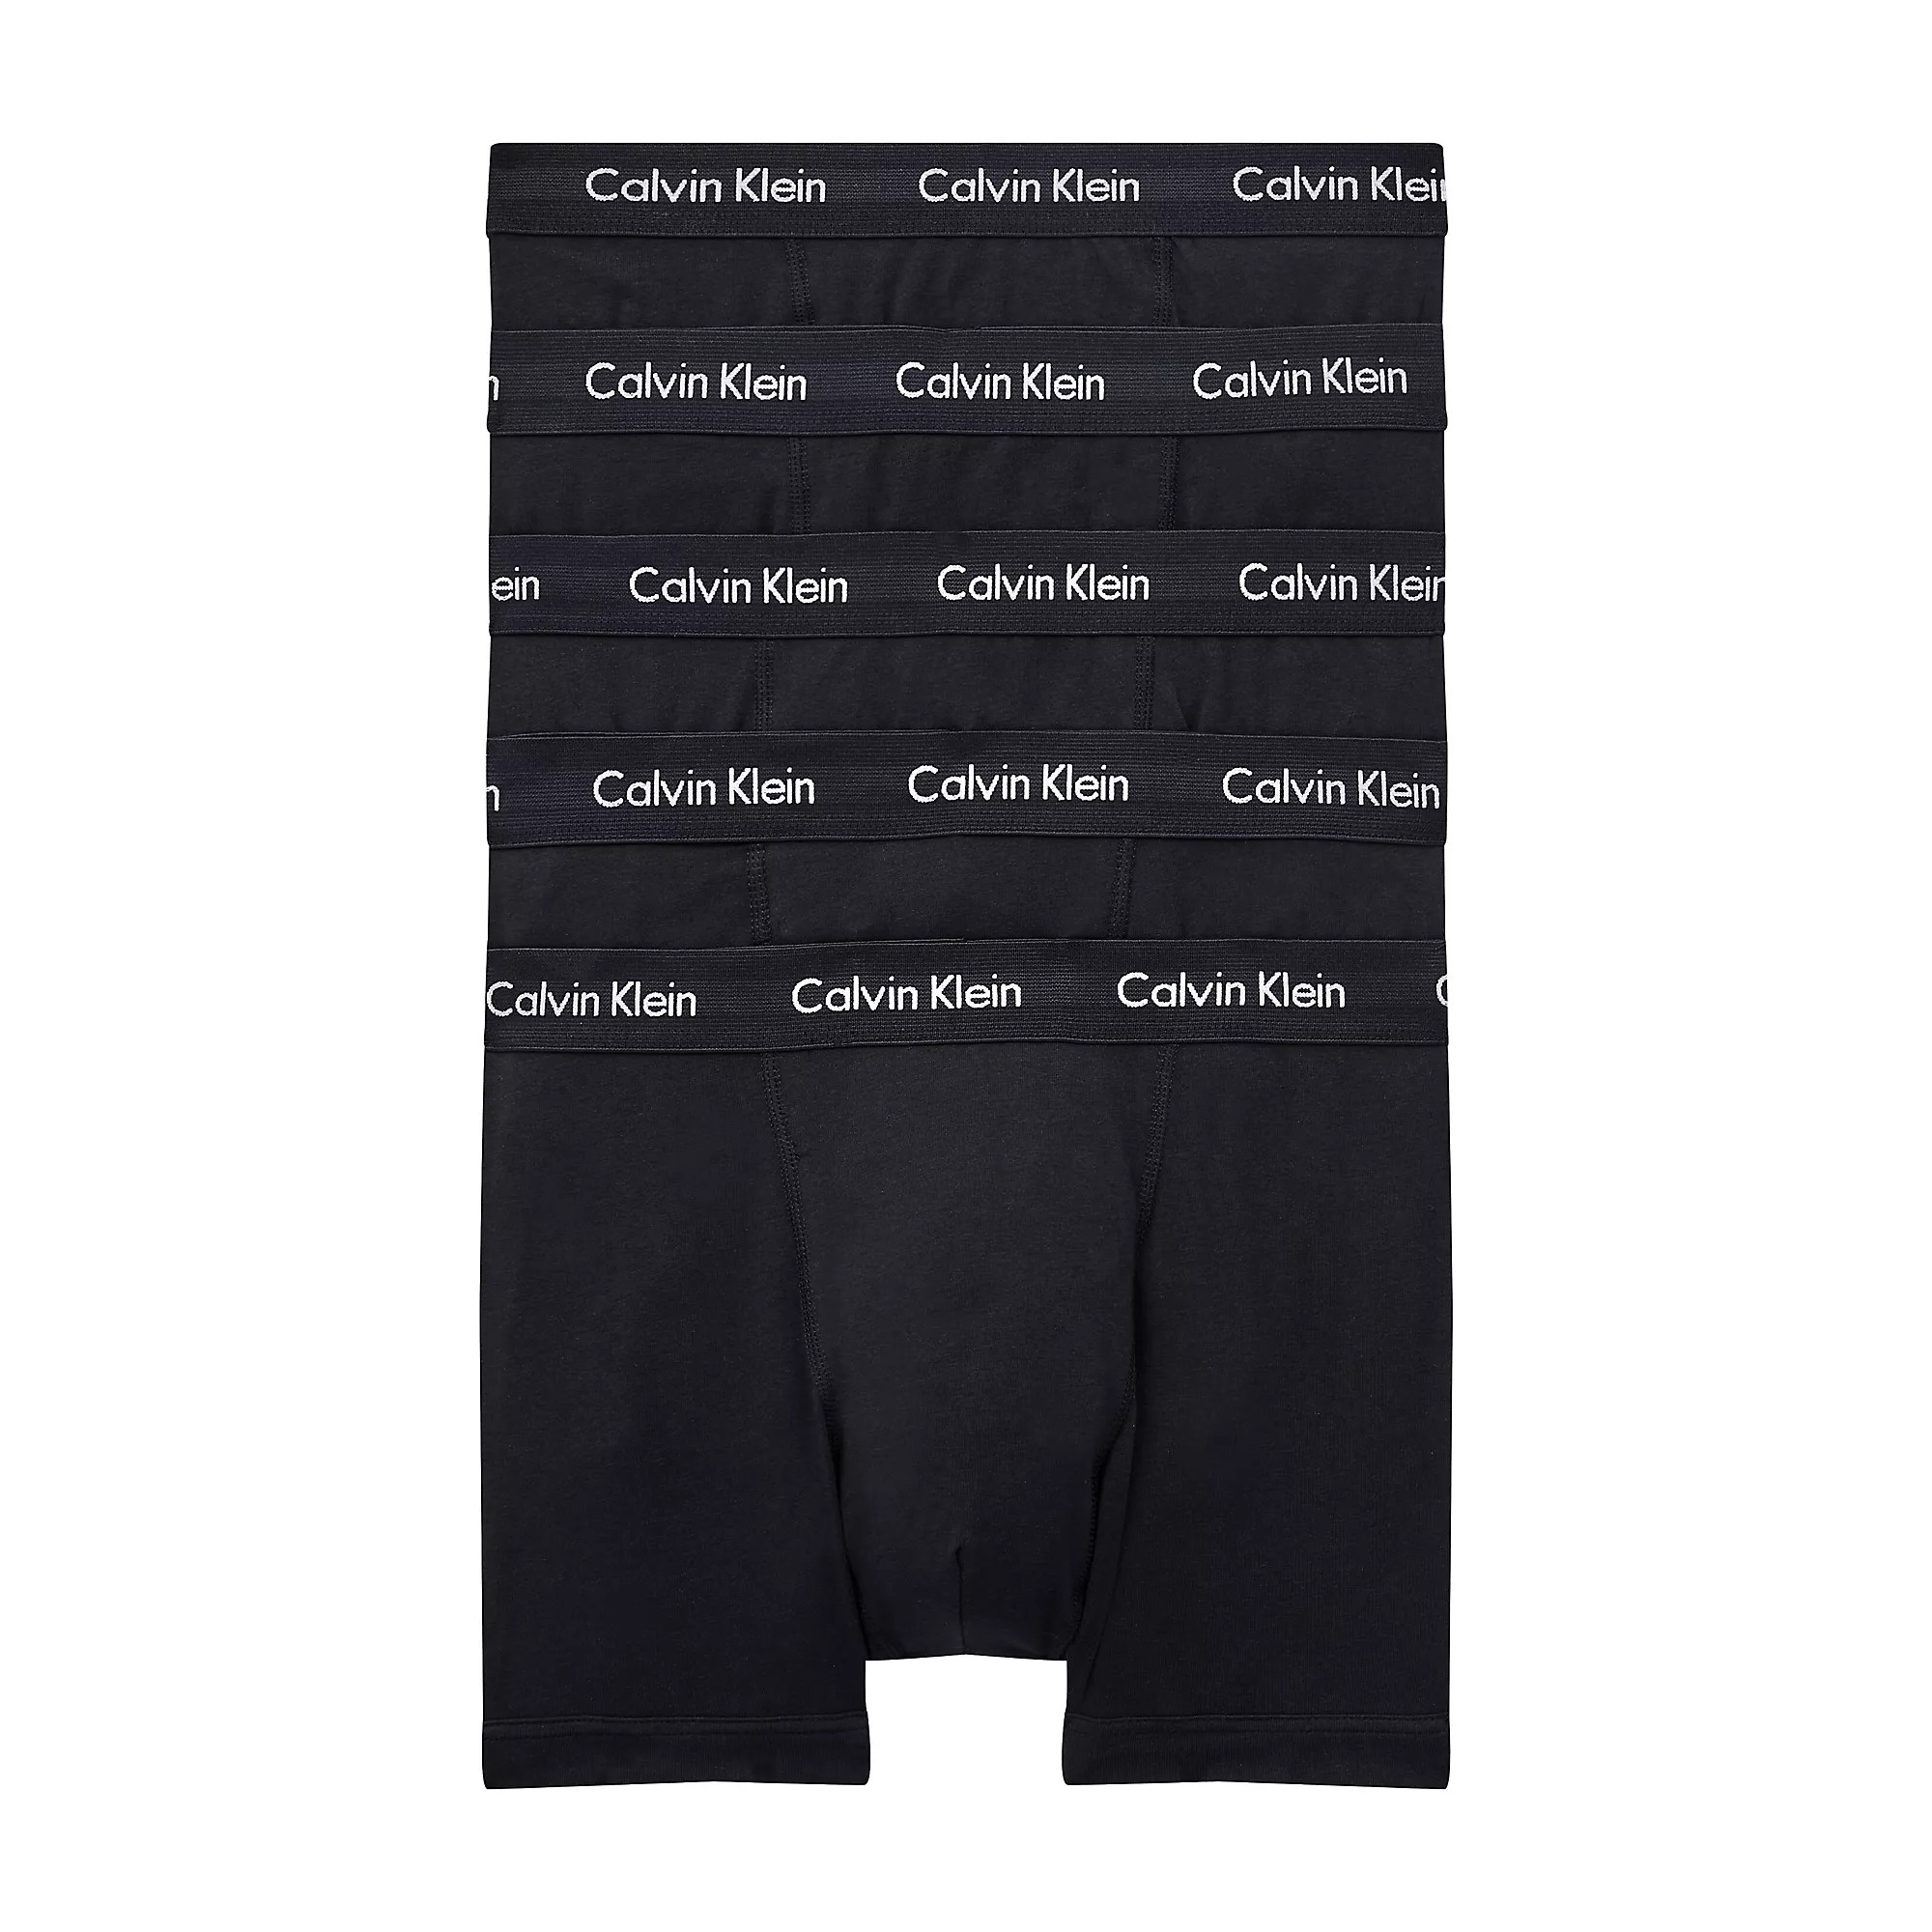 Pánské spodní prádlo TRUNK 5PK 000NB2877AXWB - Calvin Klein XS